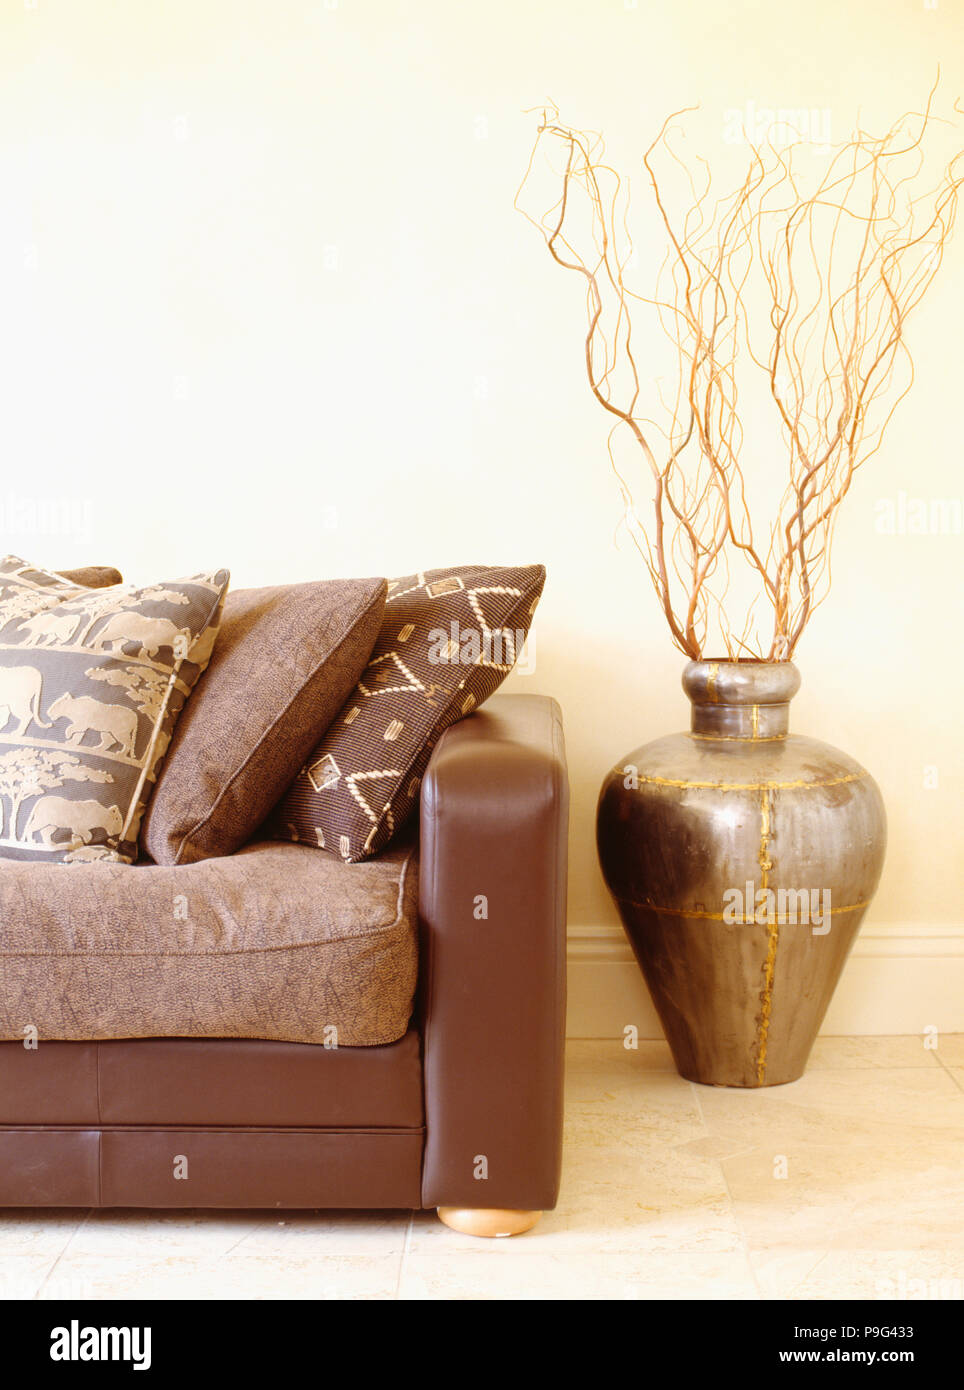 Etnico-modellato cuscini sui divani in pelle marrone accanto a rami in pentola marocchina Foto Stock